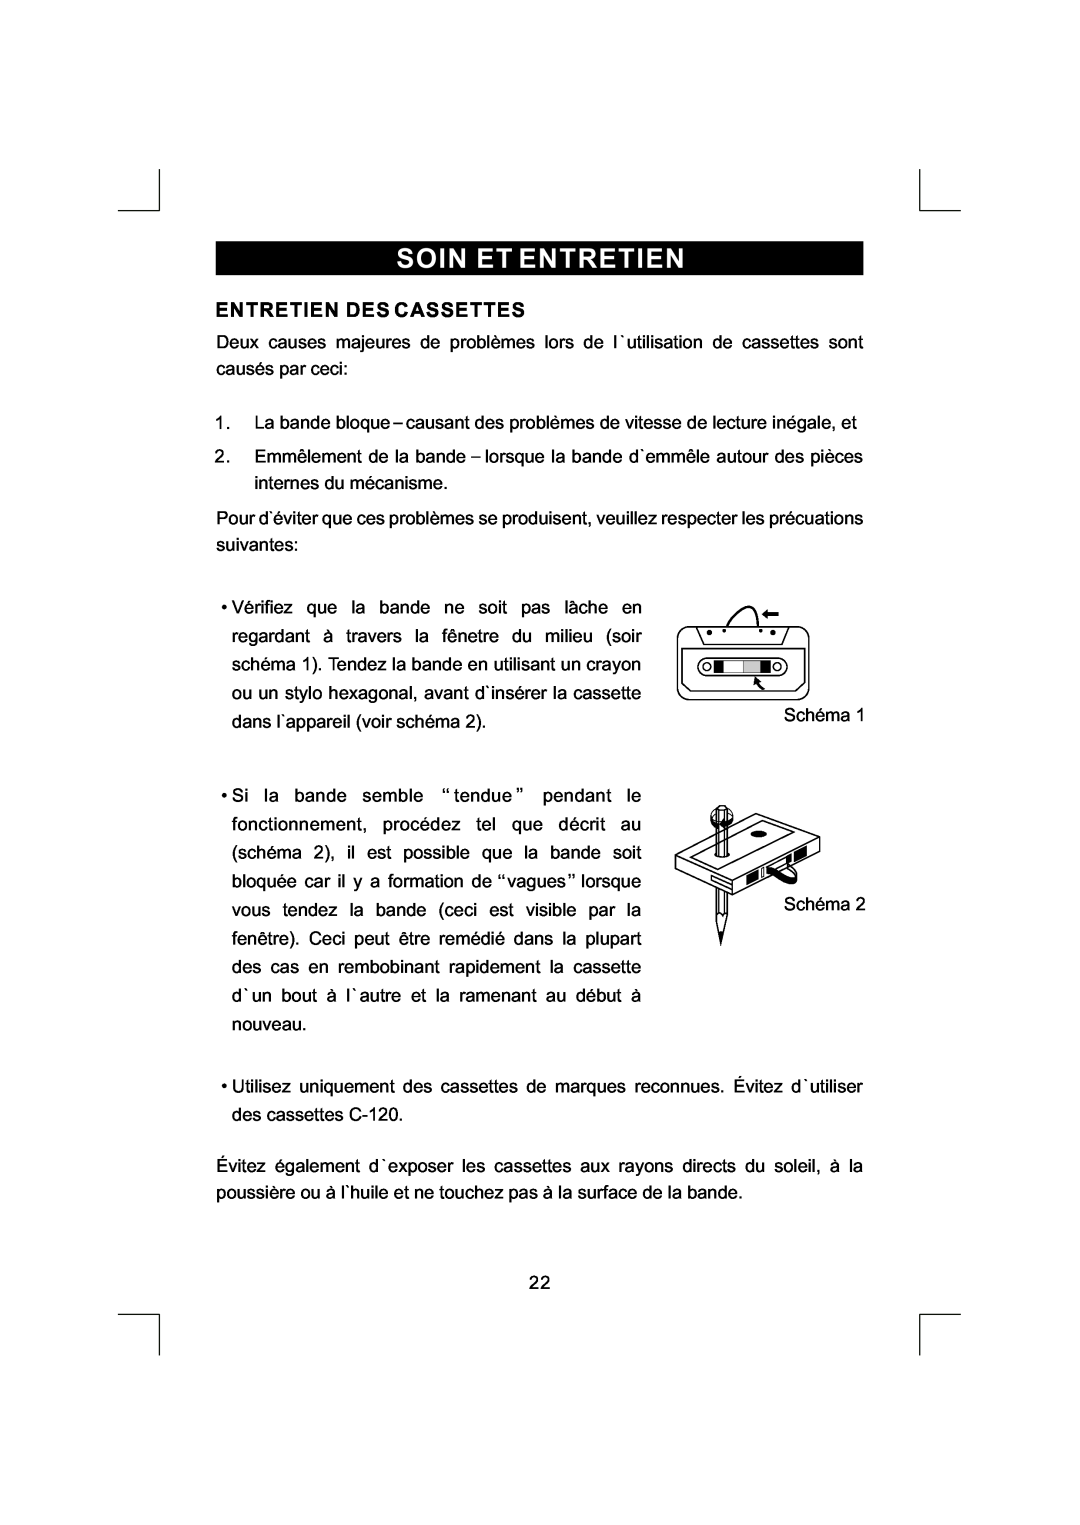 Emerson NR290TTC owner manual Soin Et Entretien, Entretien Des Cassettes 